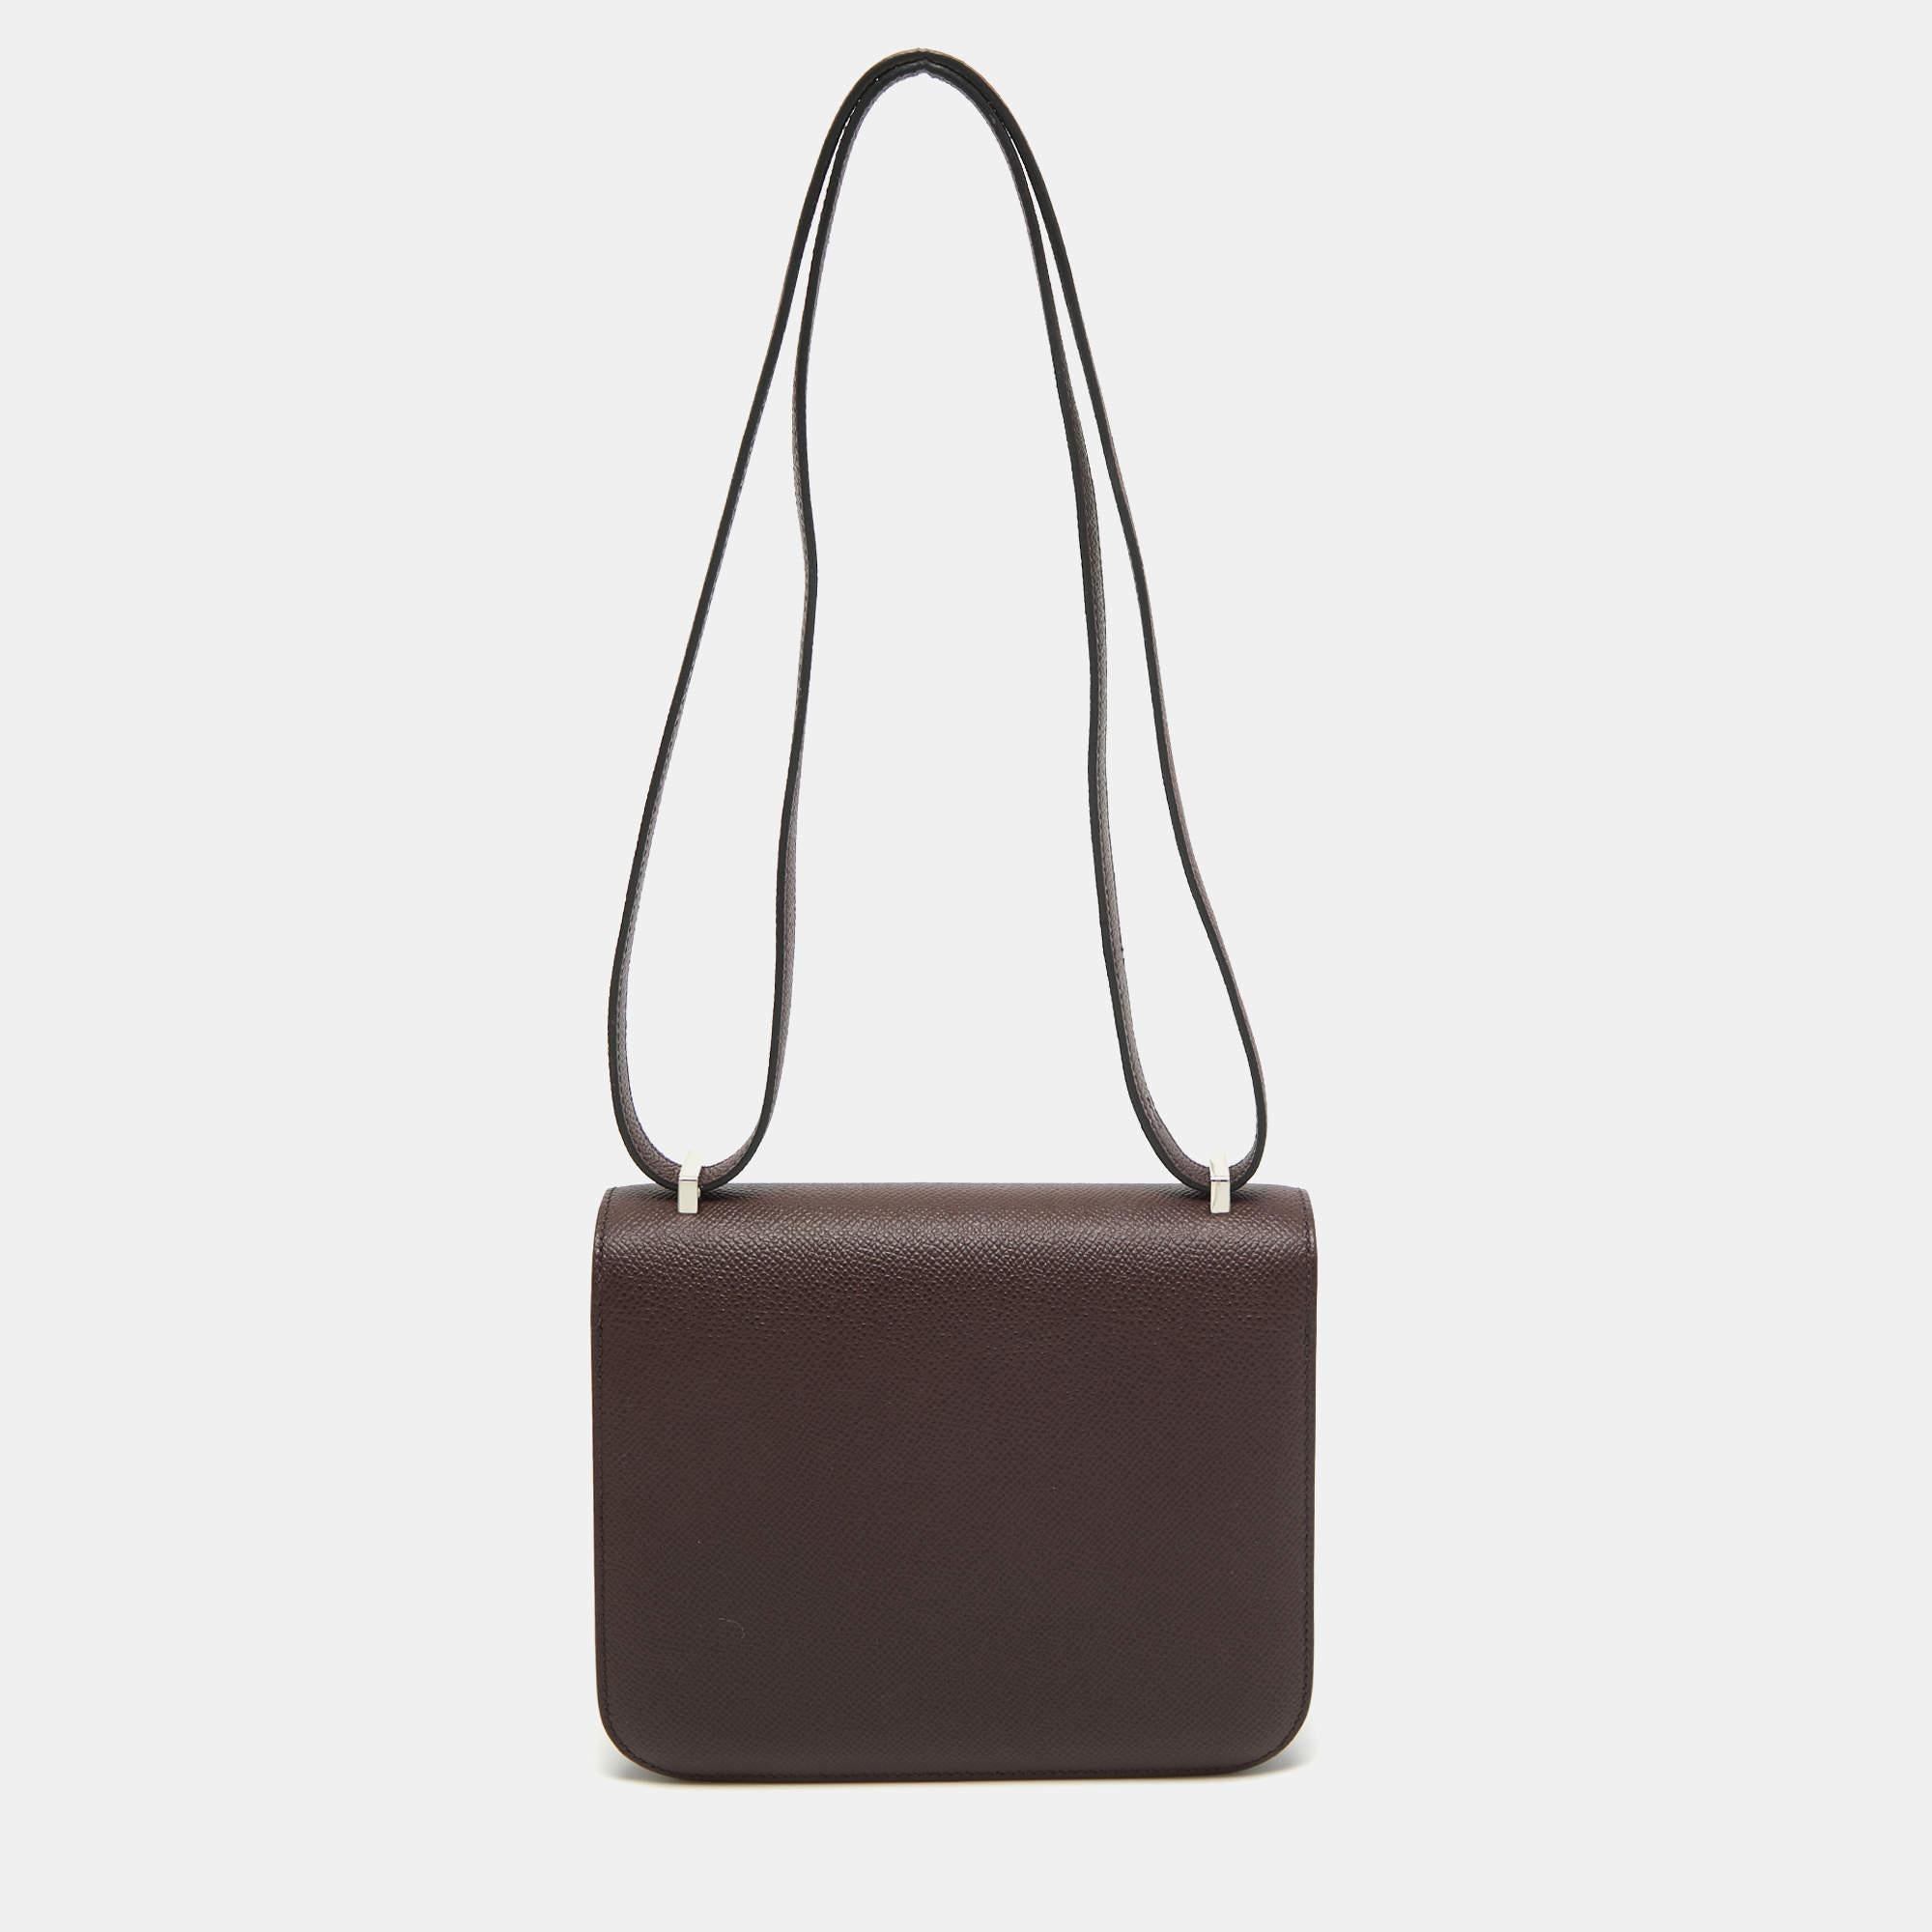 Wenn es eine Luxus-Handtasche gibt, die Sie wählen möchten, dann ist es eine Tasche von Hermès! Die von Hand gefertigte Kreation ist die ultimative Wahl für eine investitionswürdige Wahl.

Enthält: Original Box, Markenstaubsack